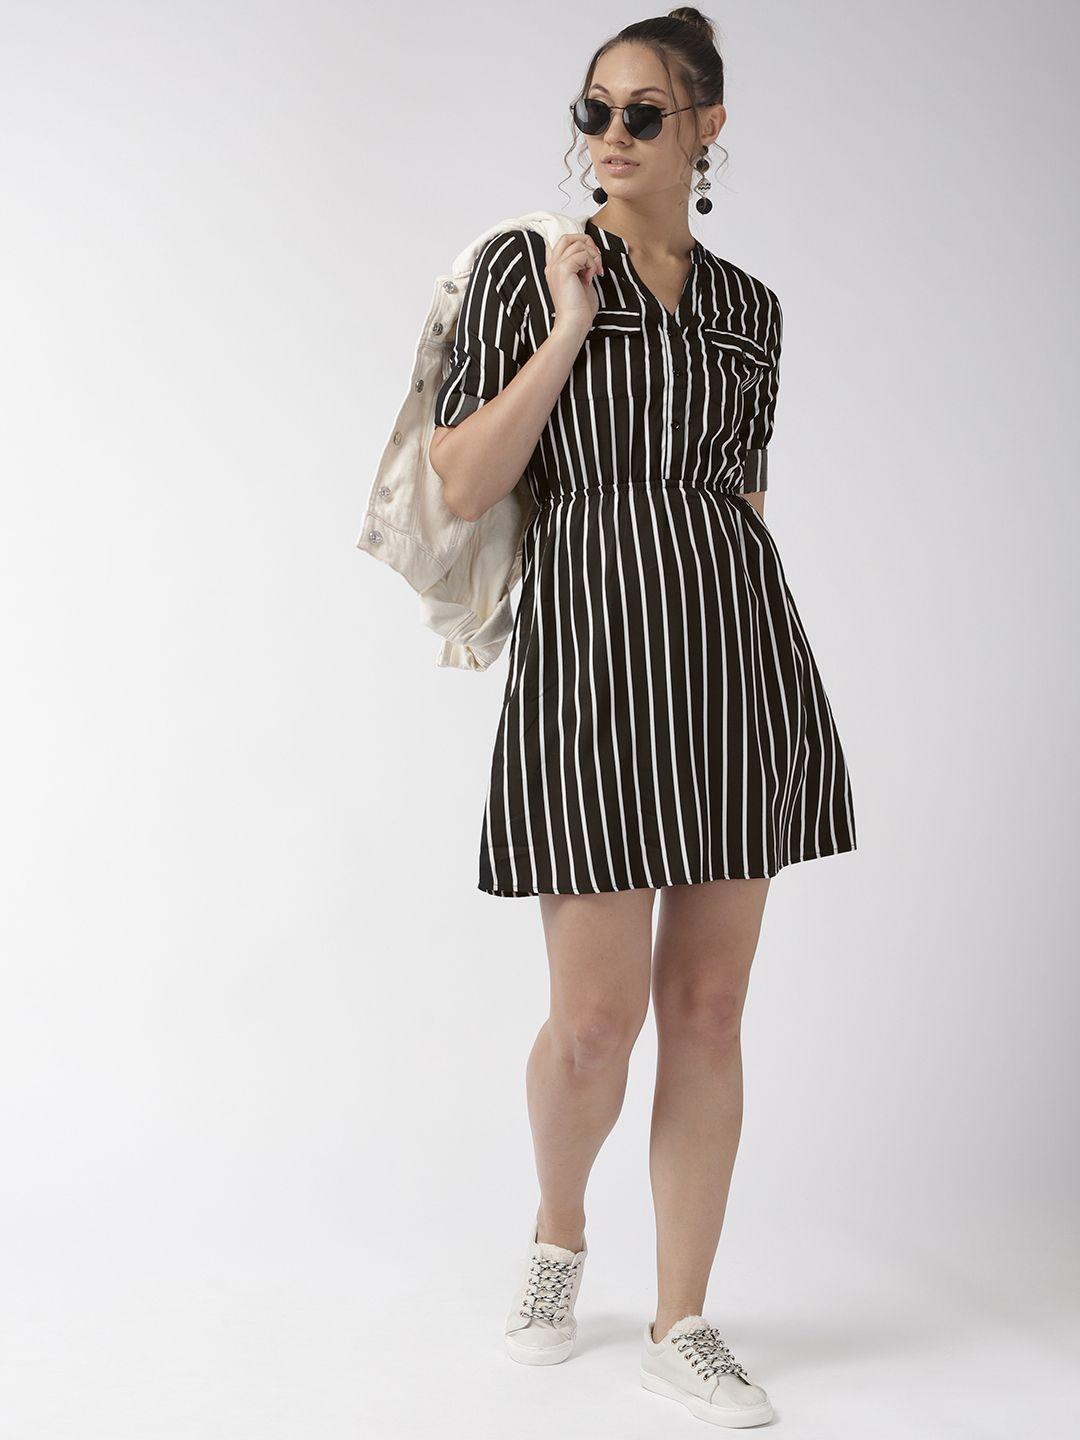 style-quotient-women-black-&-white-striped-a-line-dress